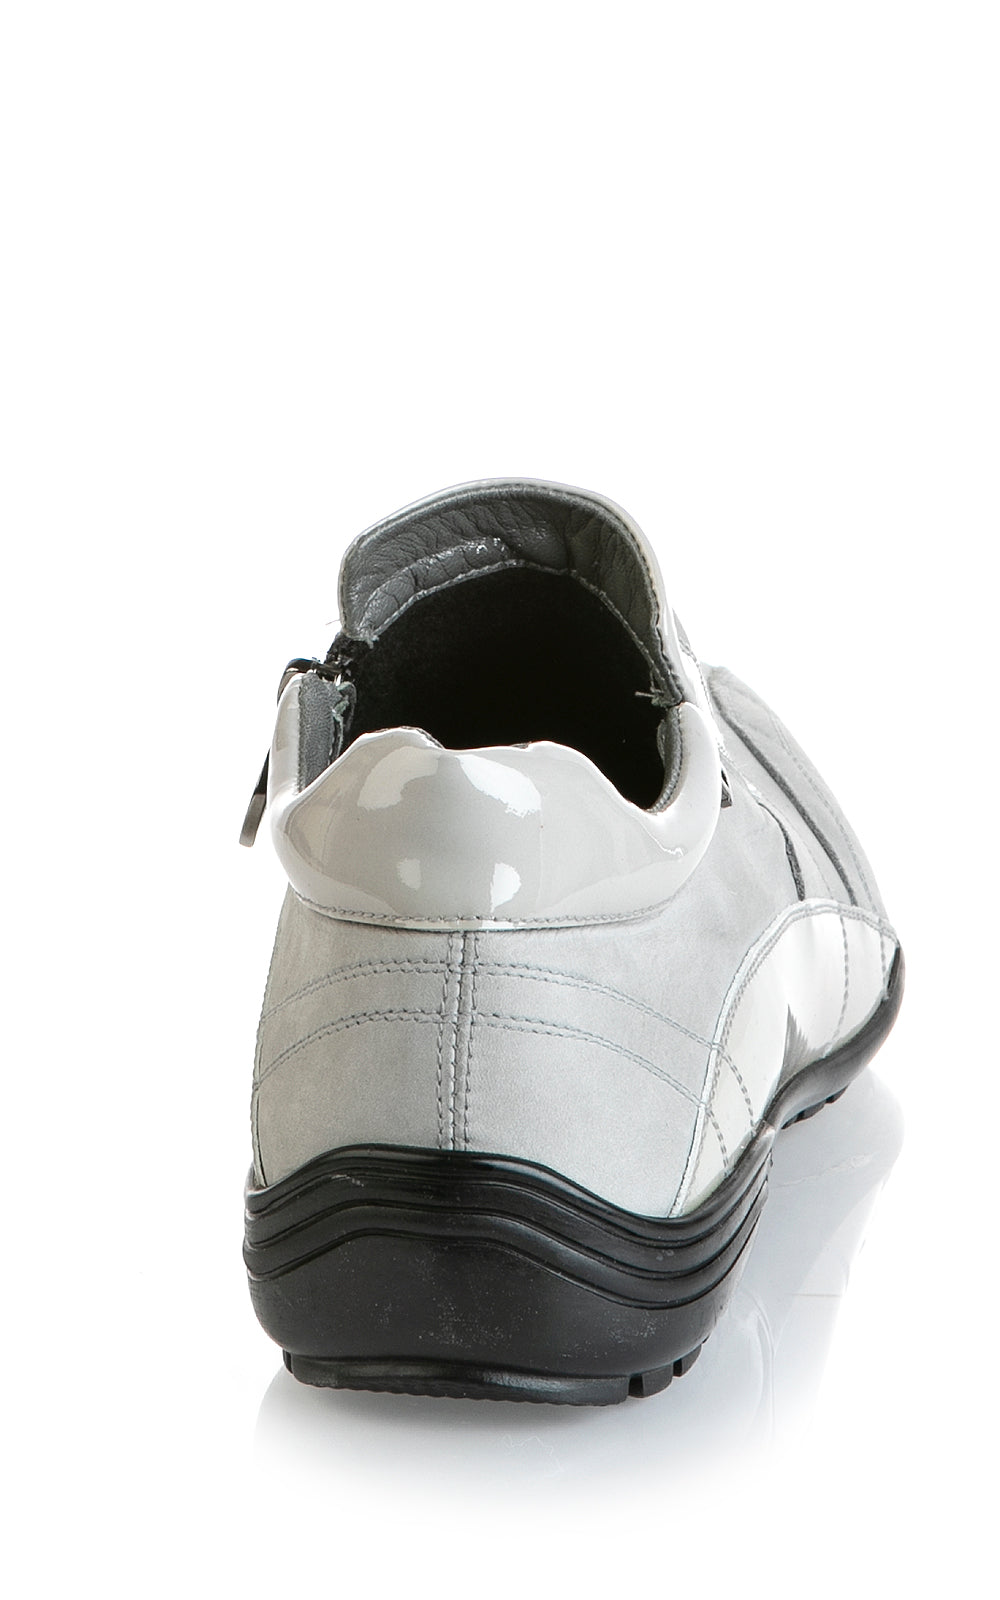 8005 Good Man Sneakers / Gray